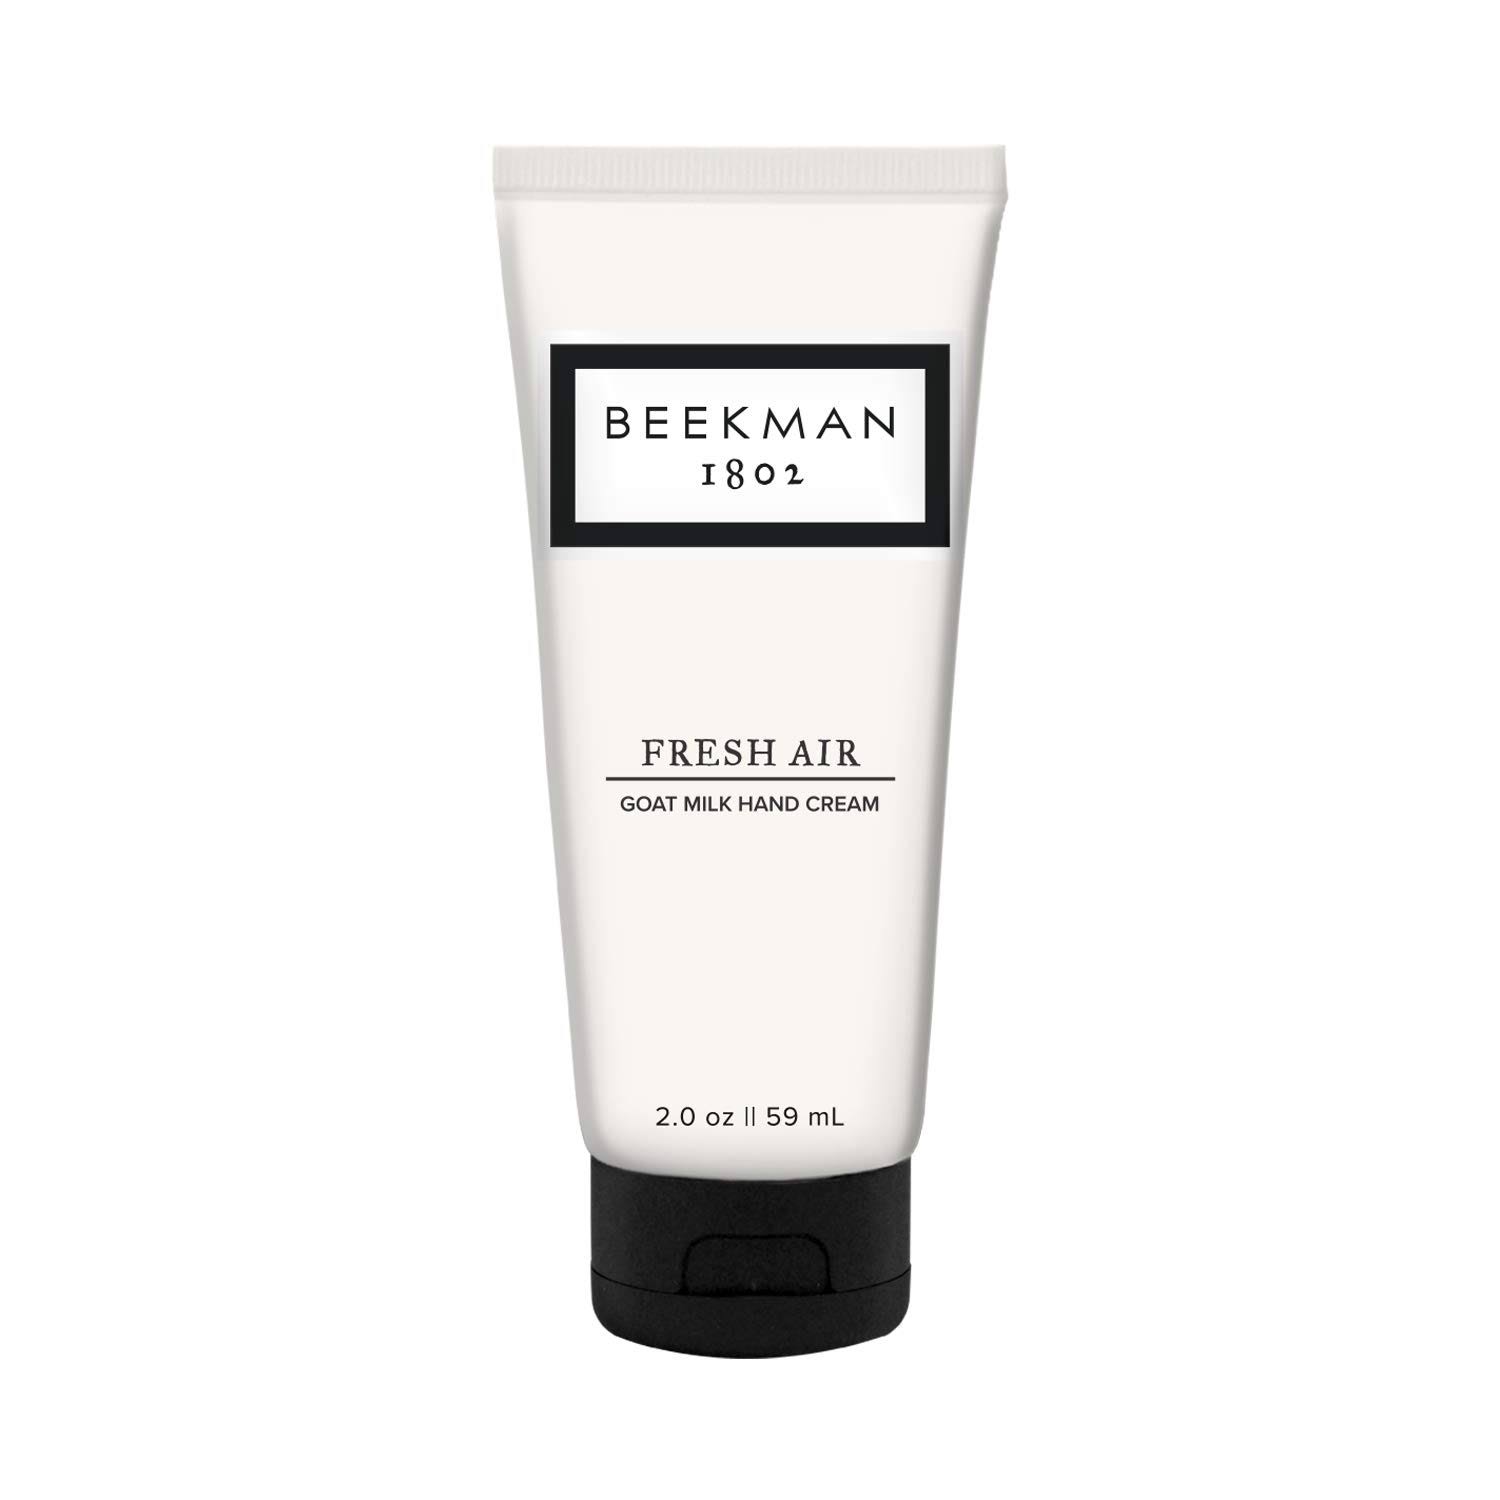 Beekman 1802 Hand Cream, Fresh Air